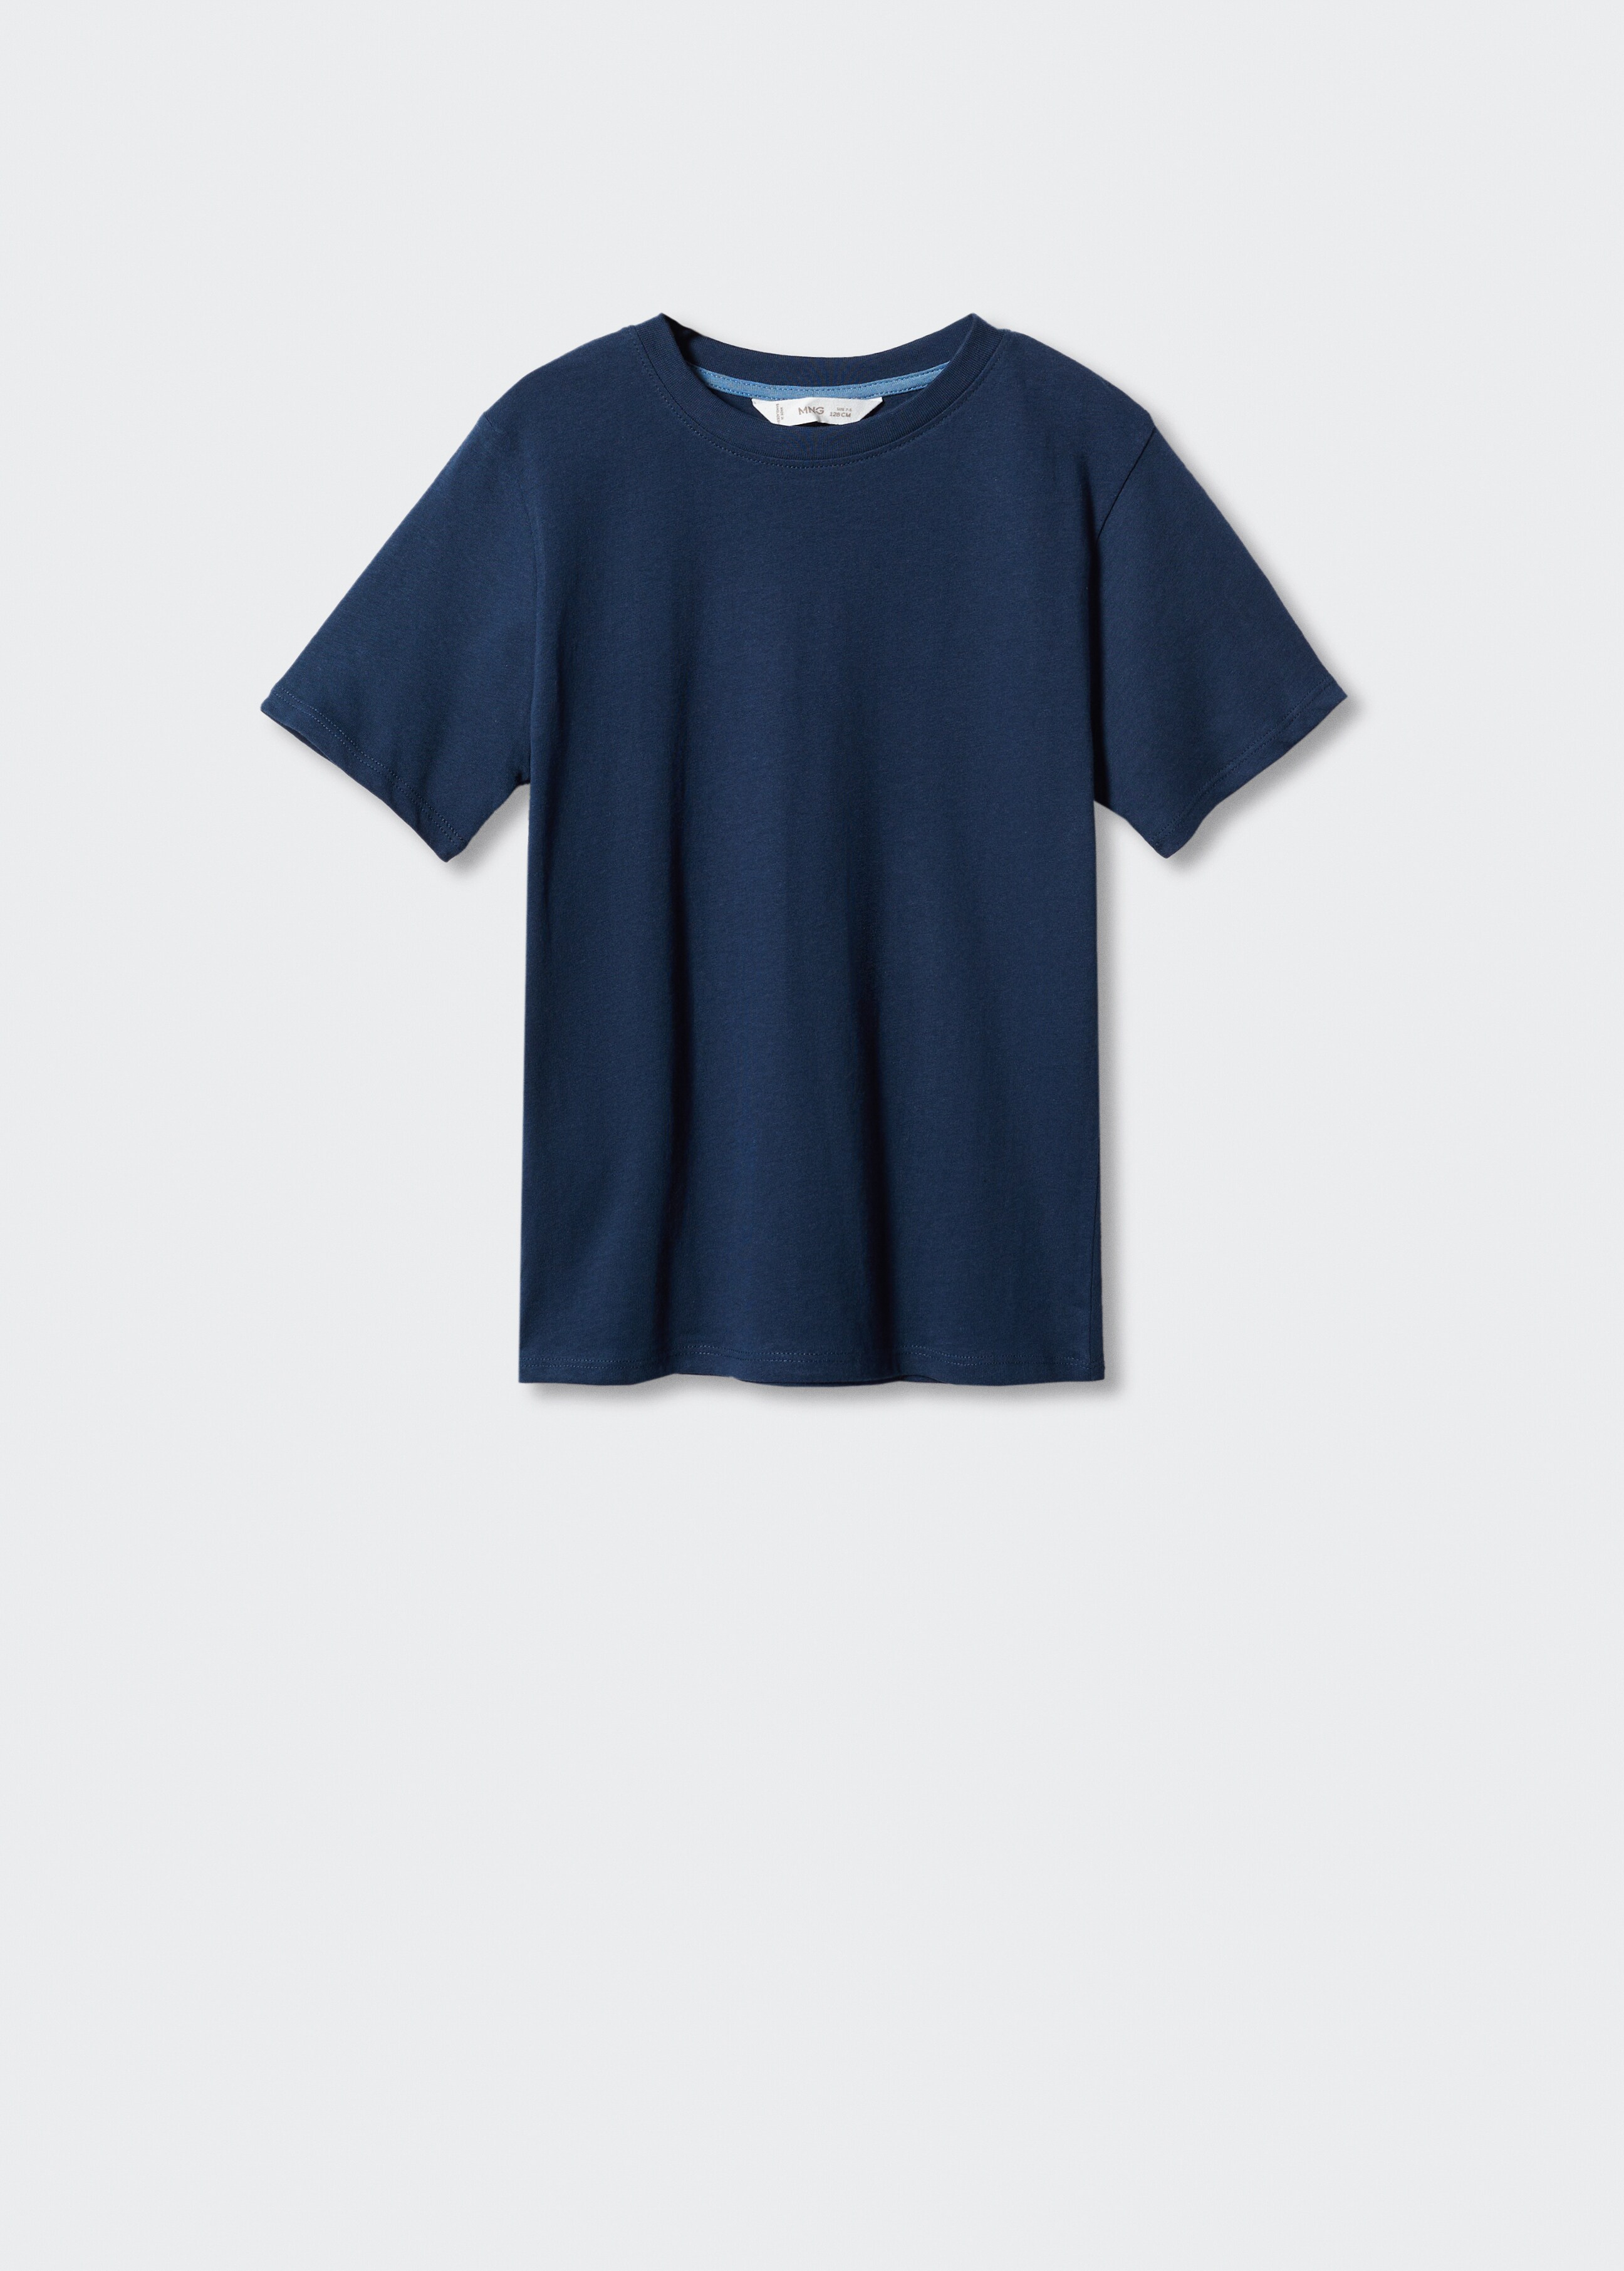 T-shirt básica de 100% algodão - Artigo sem modelo